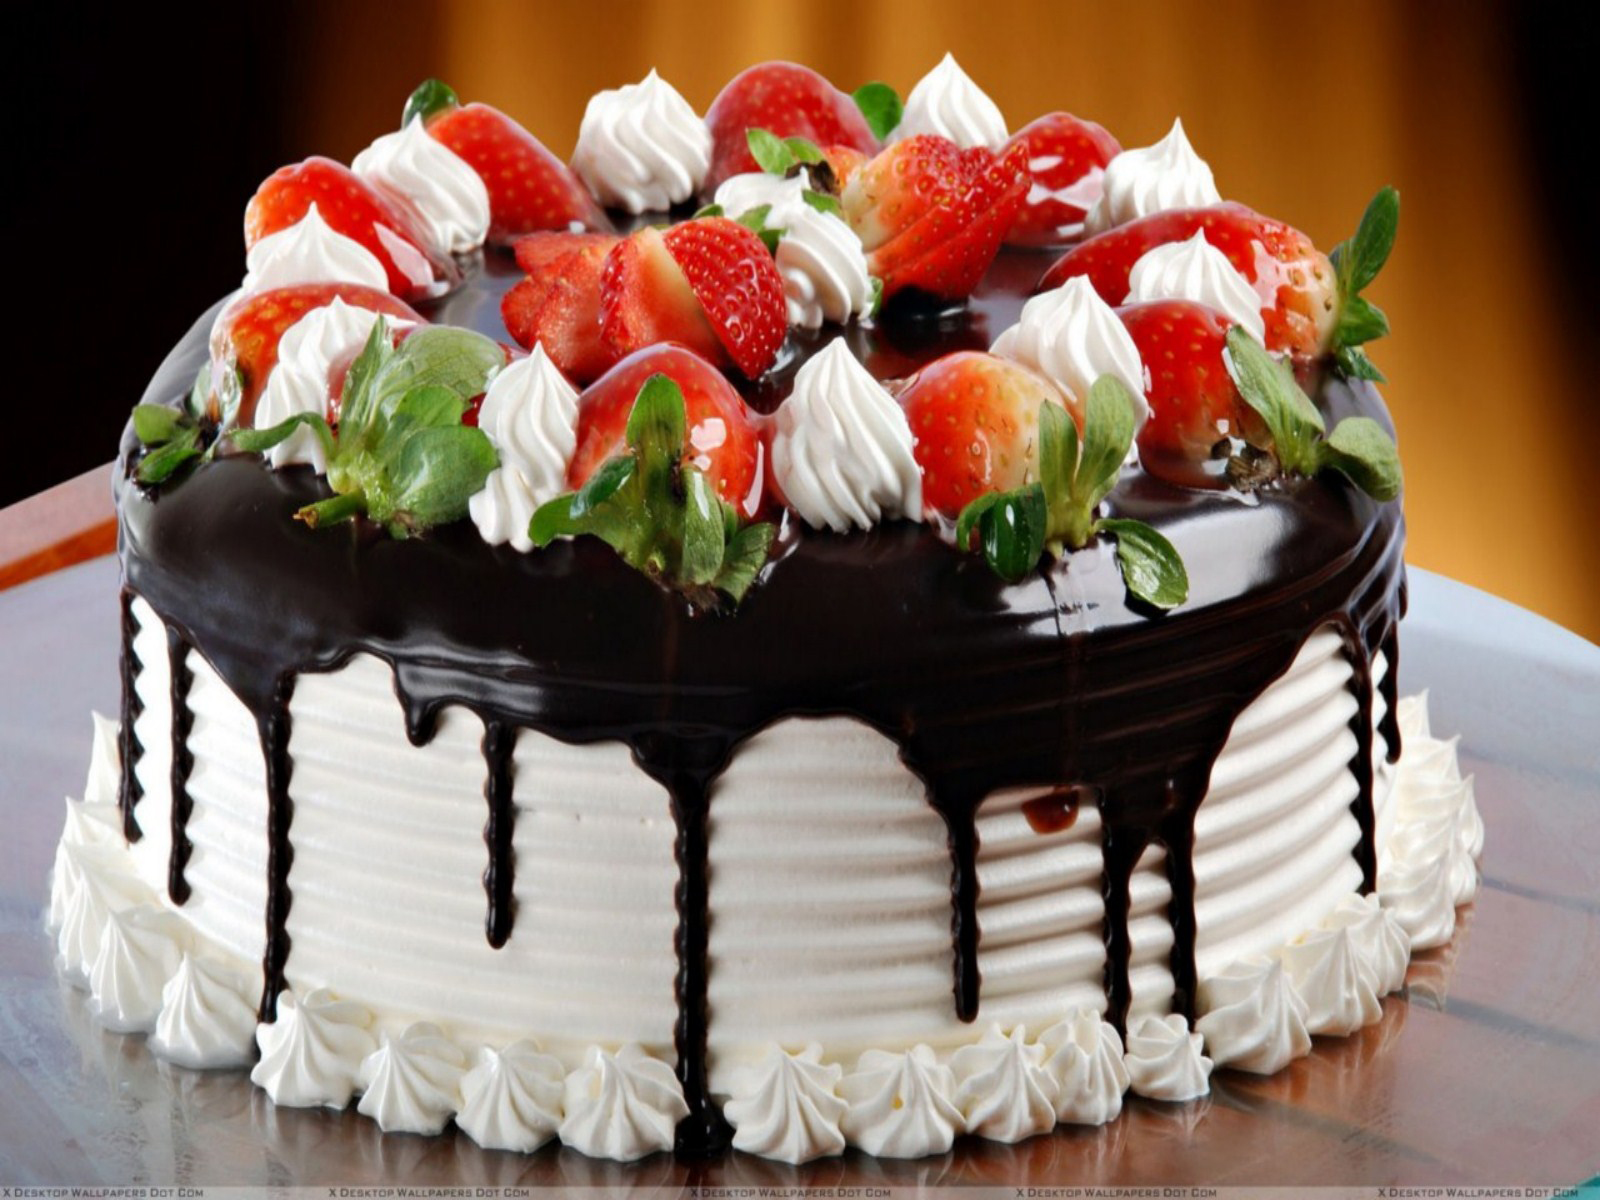 Charleston Bakery and Deli - Birthday  Themed Cakes